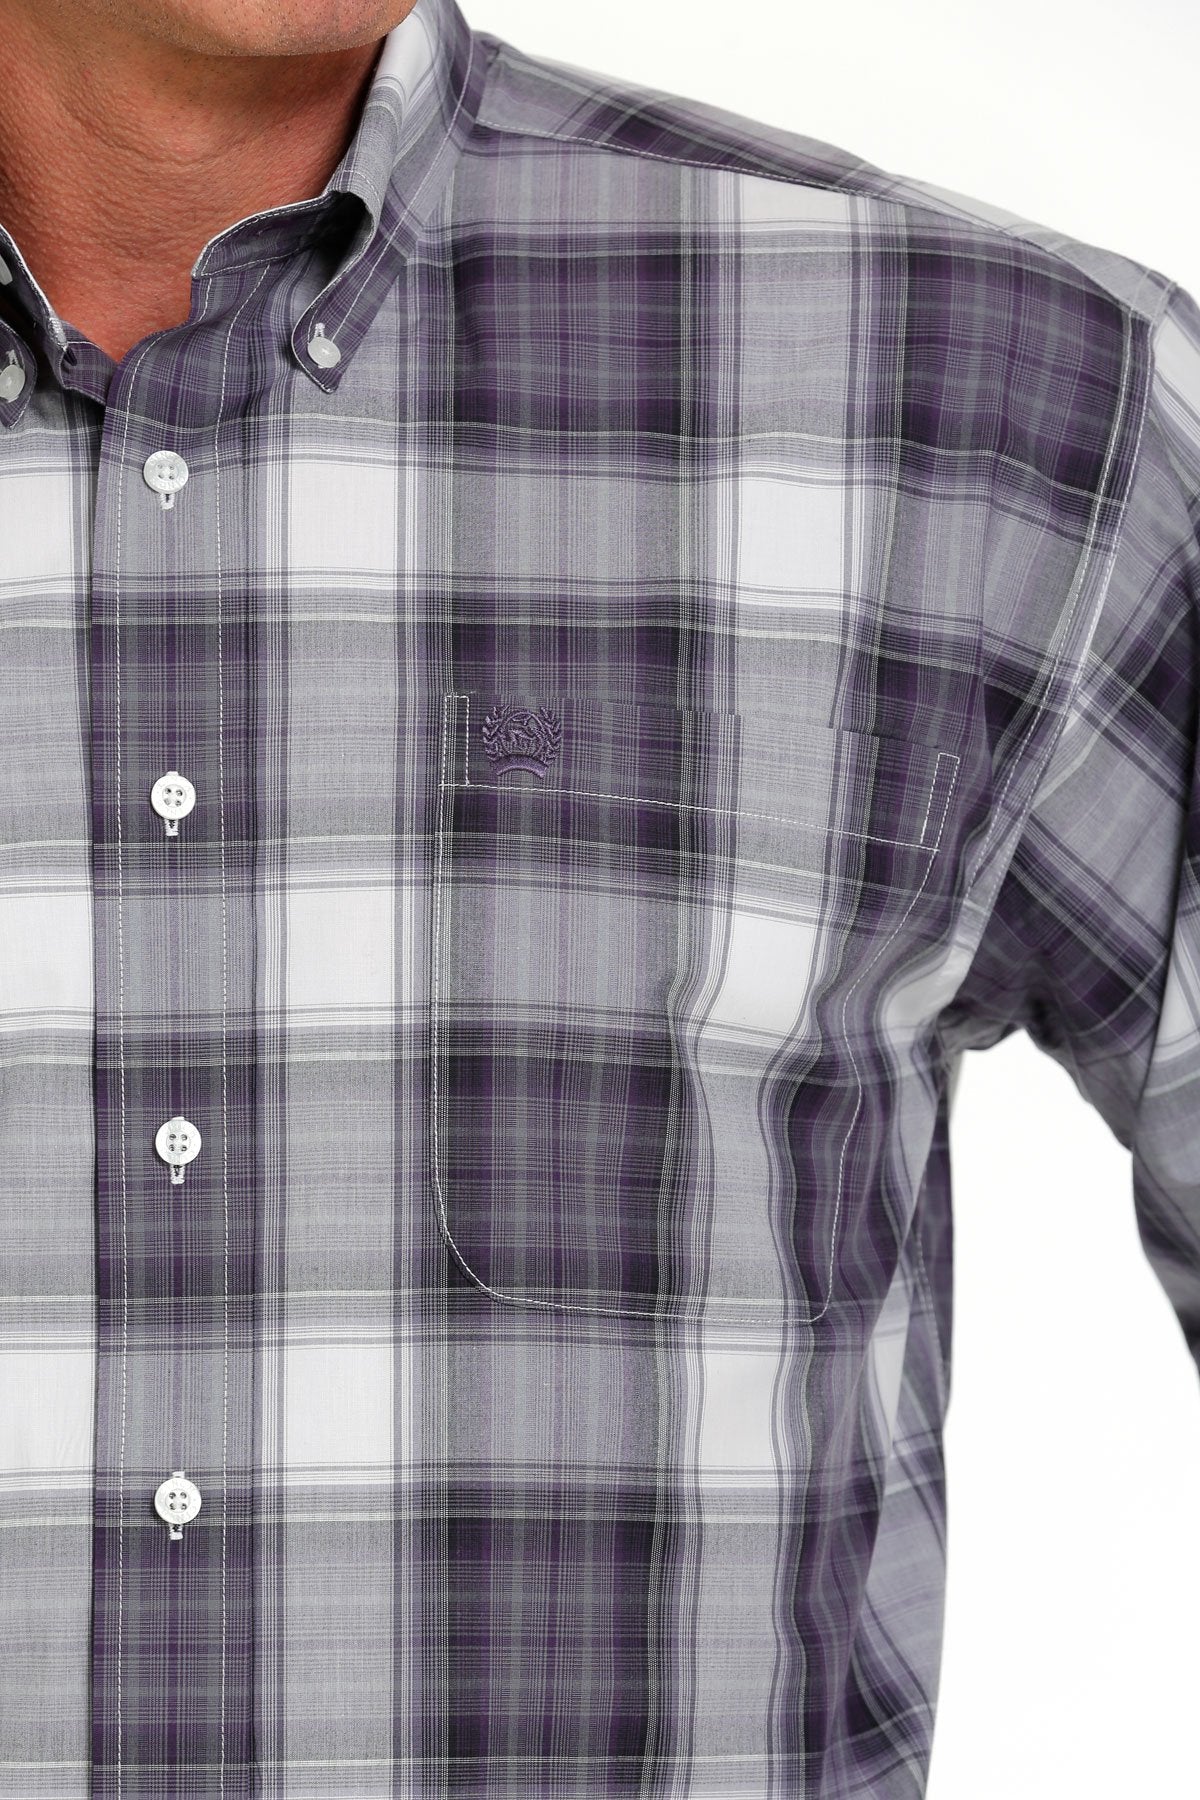 Cinch Mens Plaid Button Down Shirt - Purple/White - MTW1105636